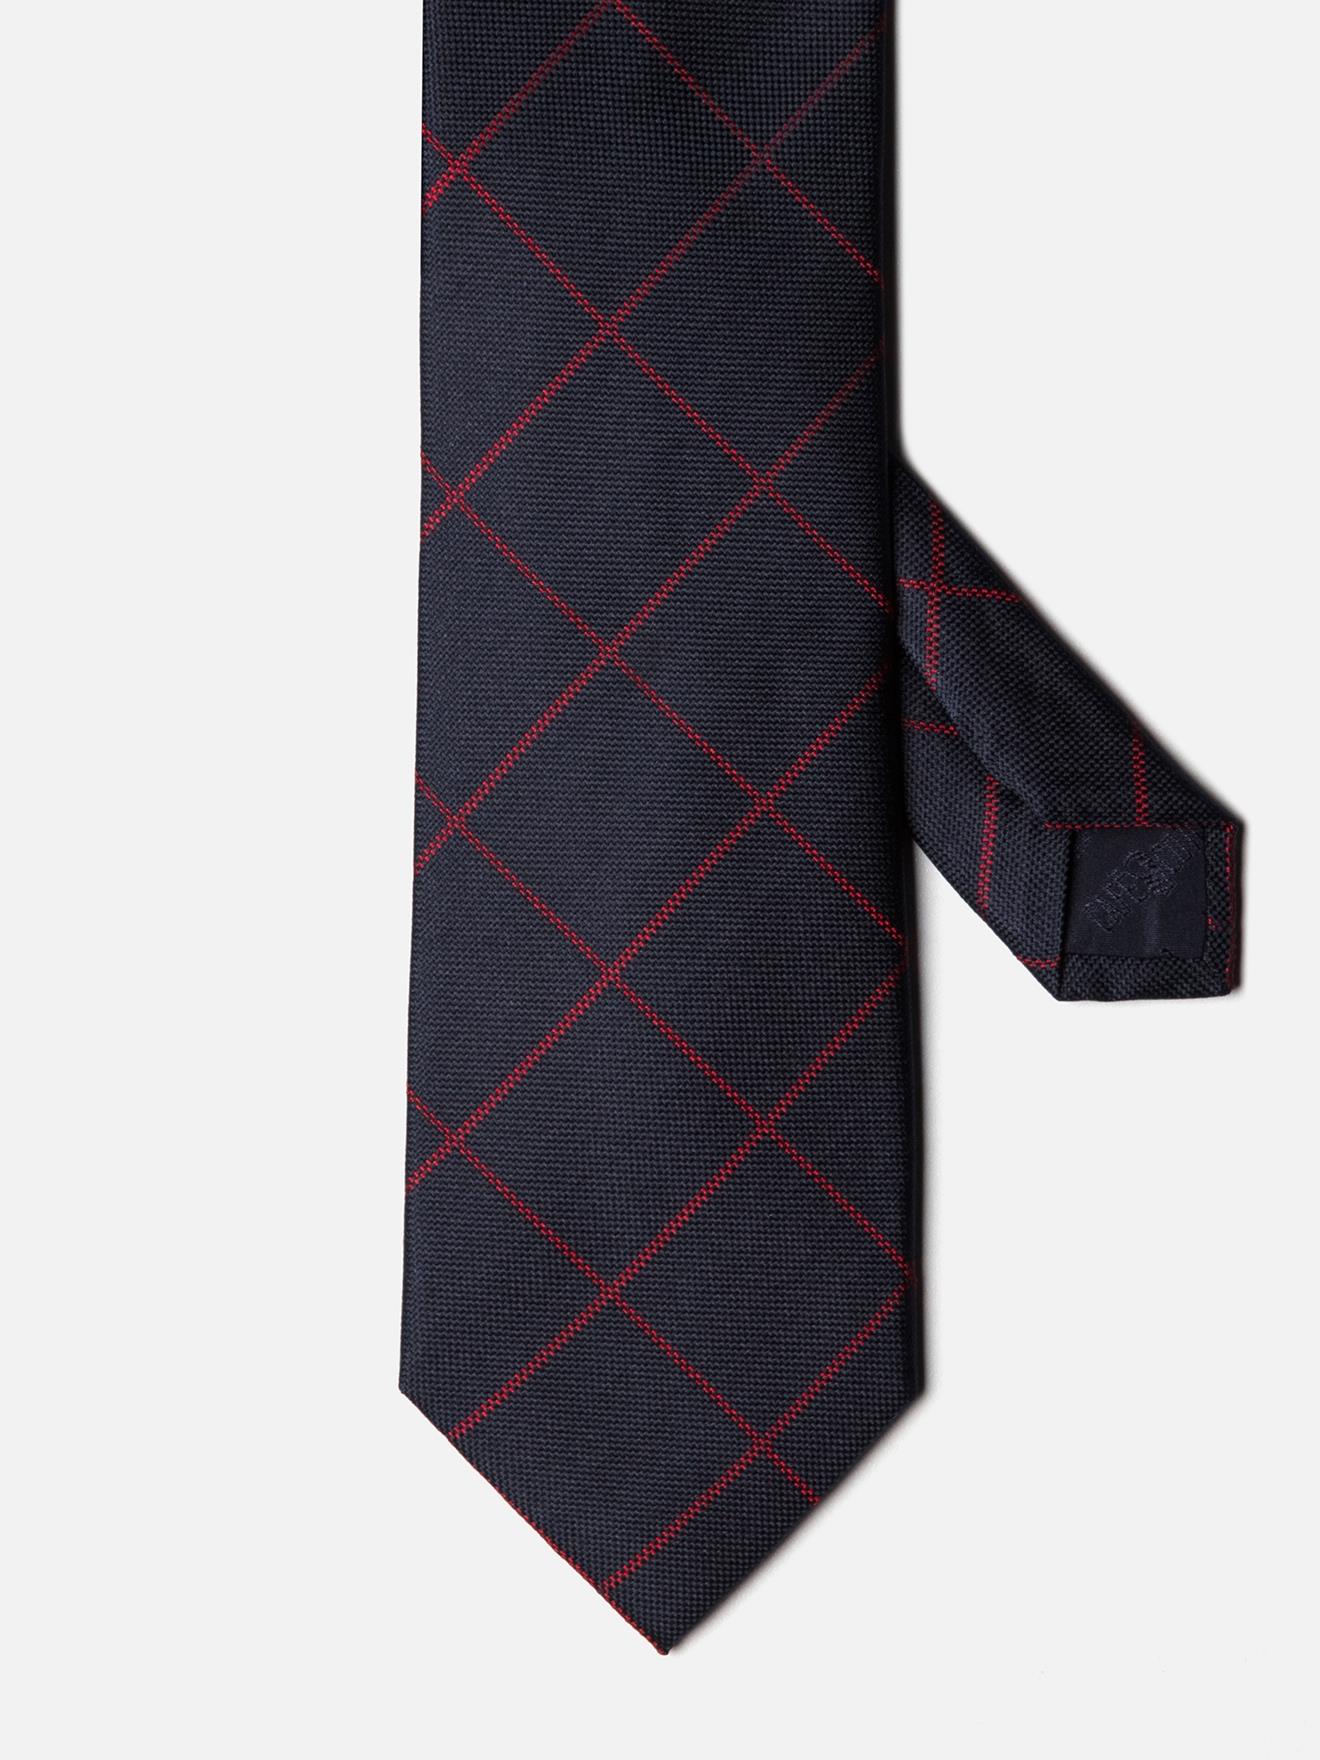 Cravate en soie marine à carreaux rouge